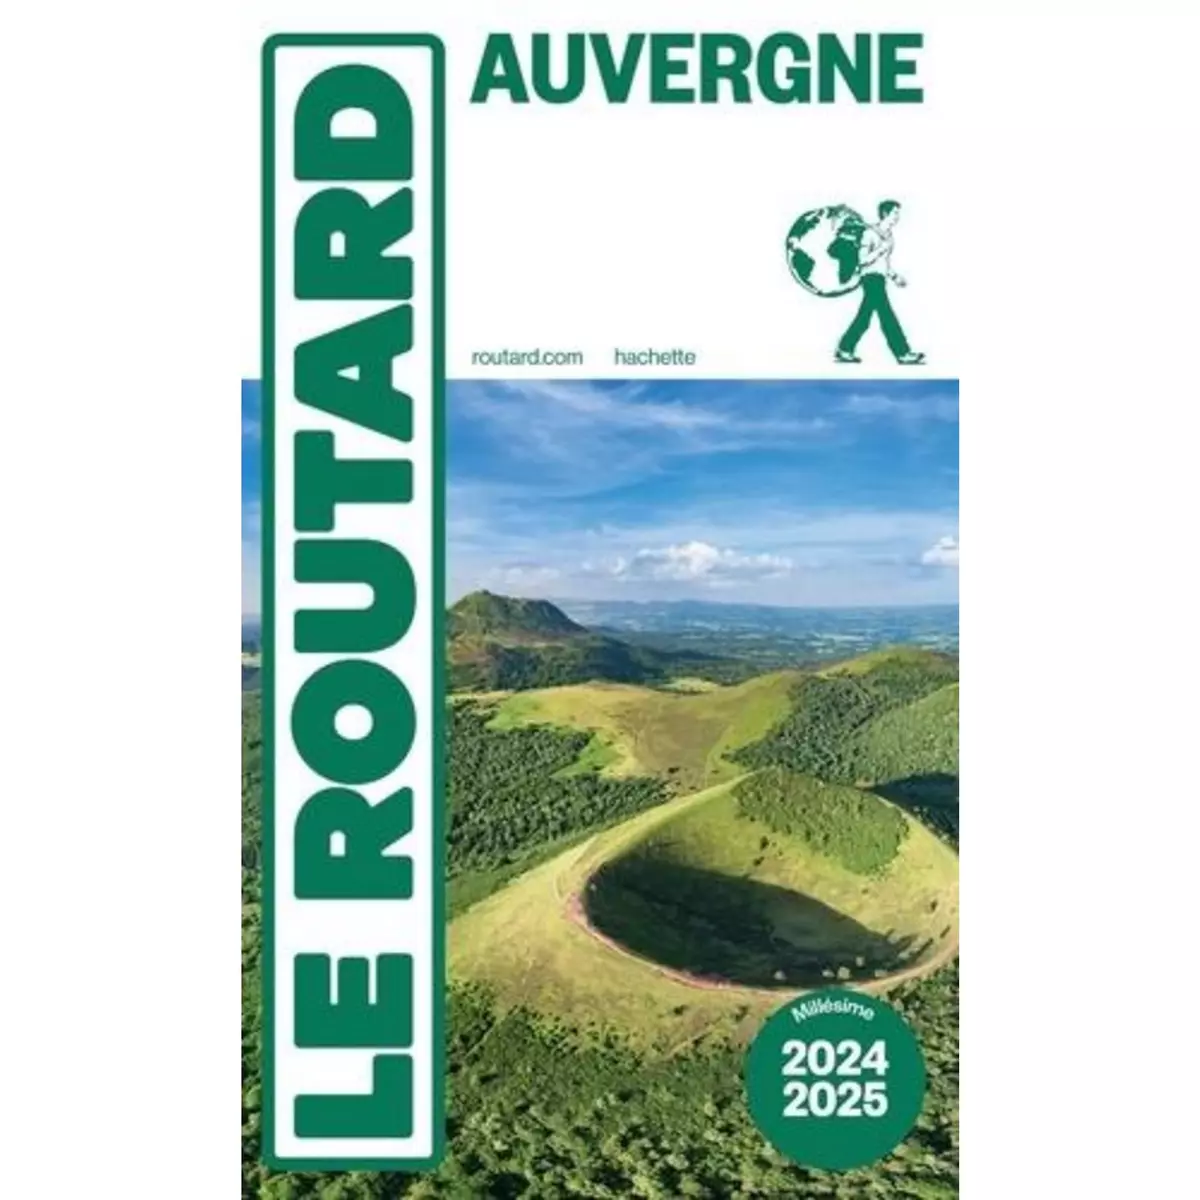  AUVERGNE. EDITION 2024-2025, Le Routard